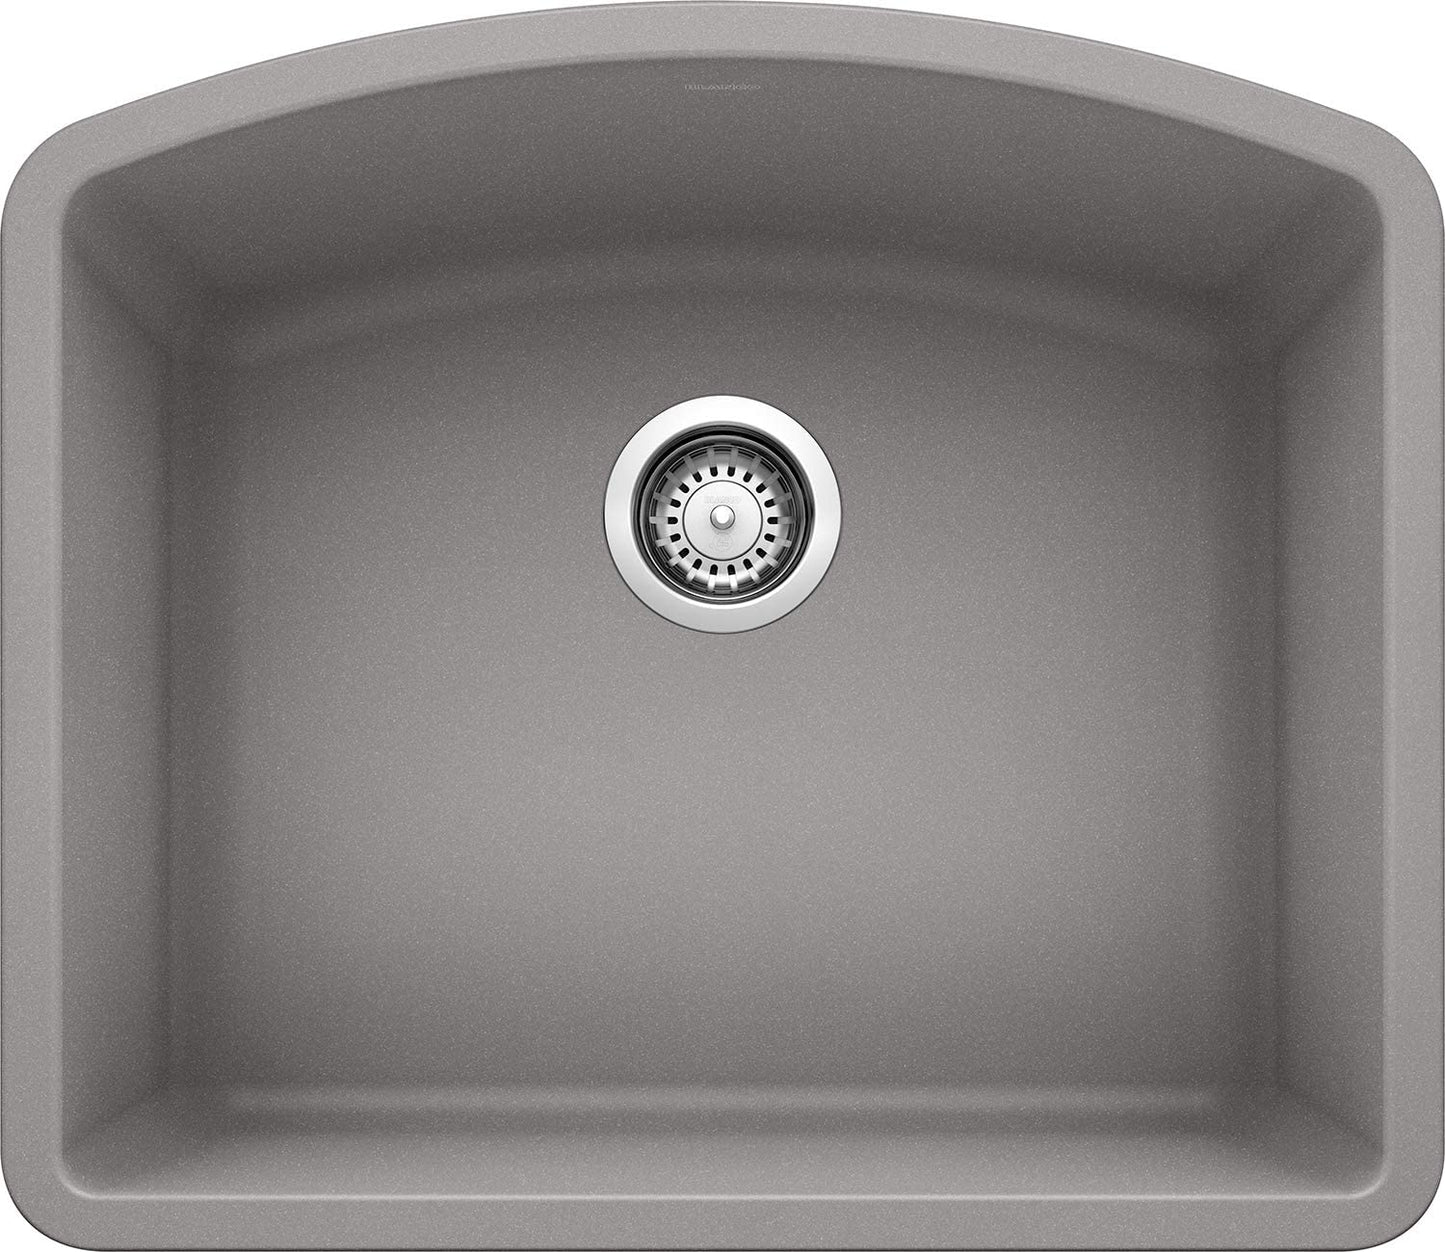 24" Diamond Single Bowl Undermount Kitchen Sink - Metallic Gray